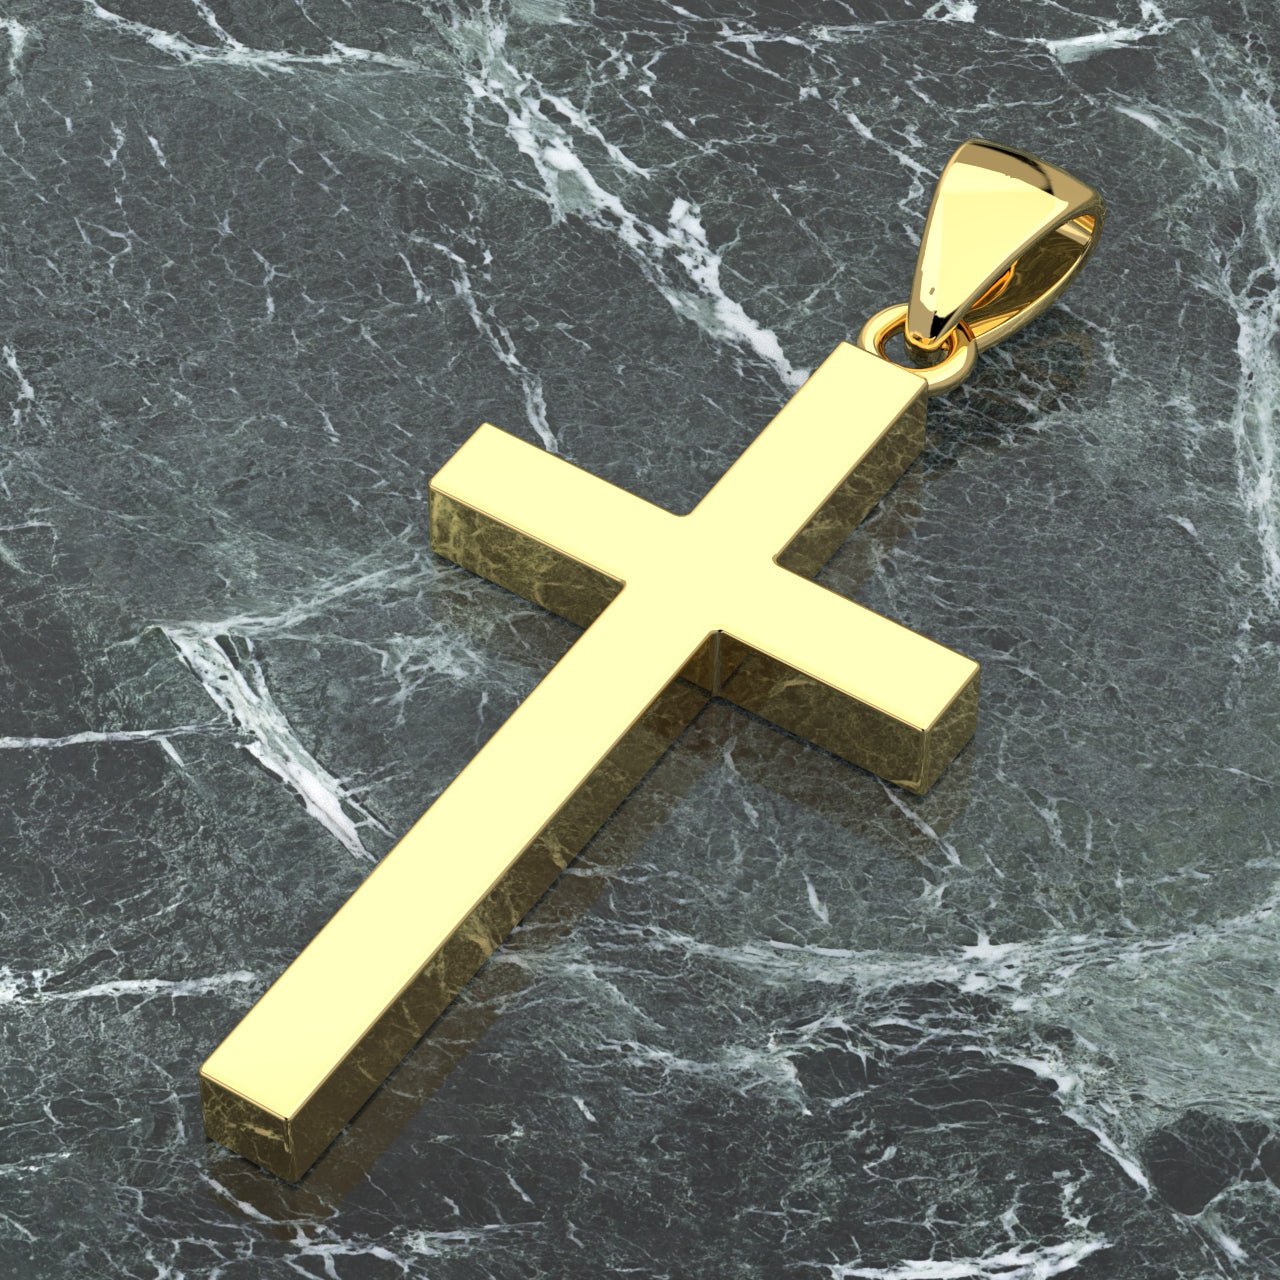 14k Gold Crucifix Necklace - Modern Catholic Jewelry – The Little Catholic